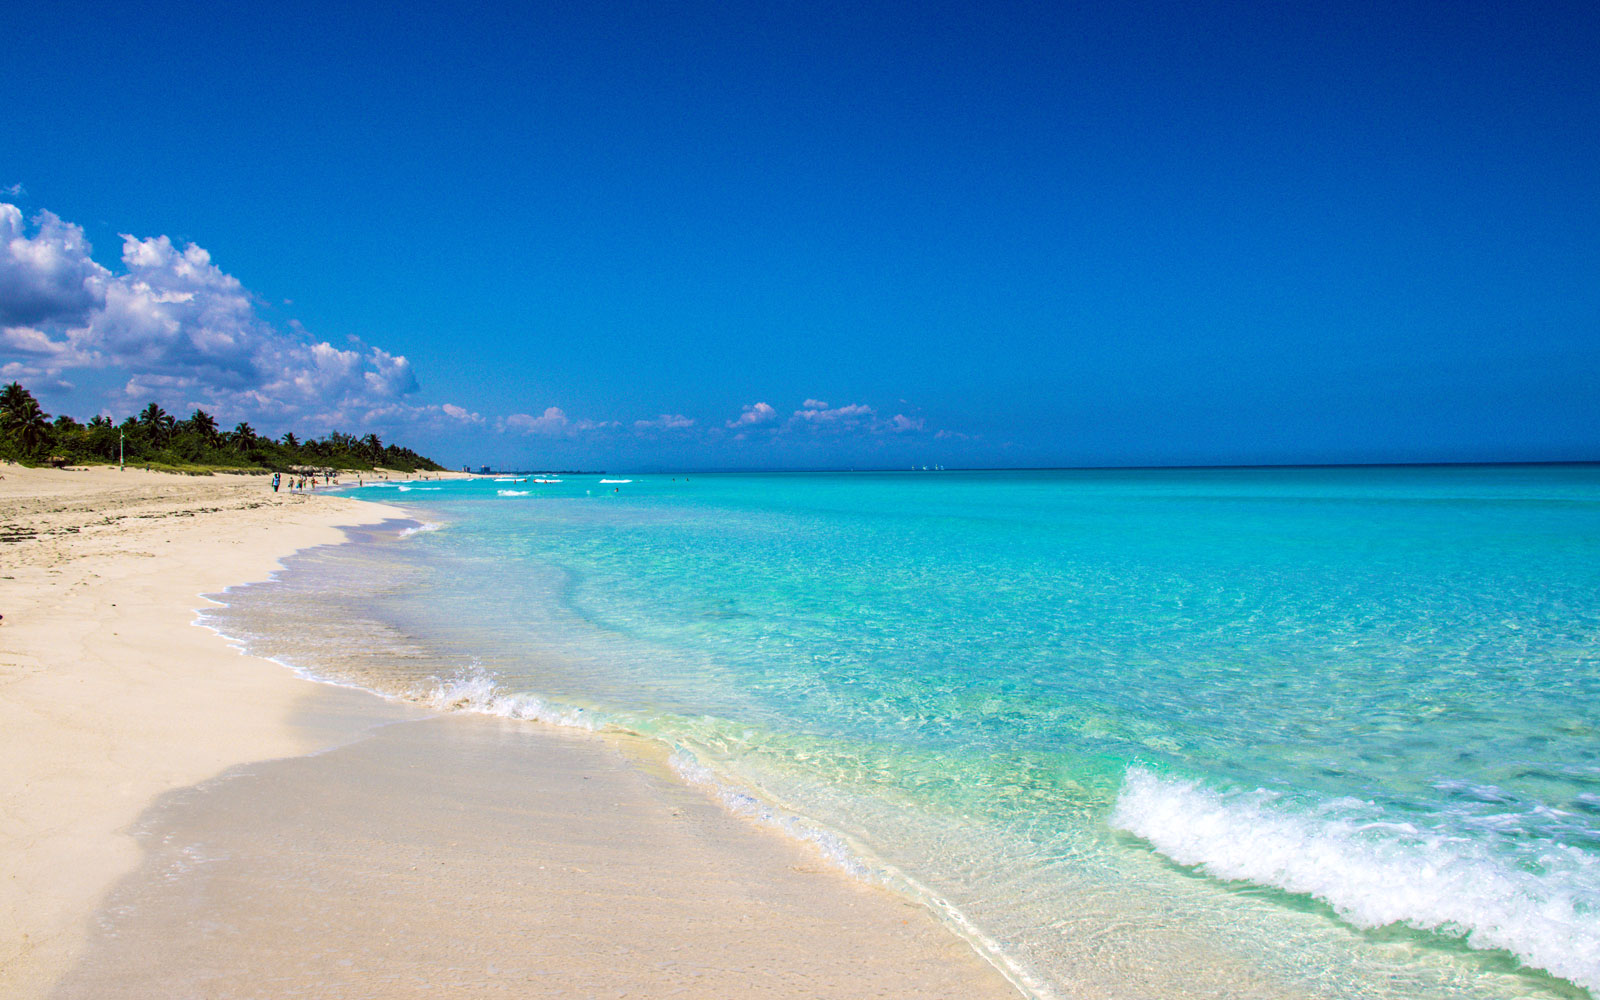 Top 5 Beaches in Cuba